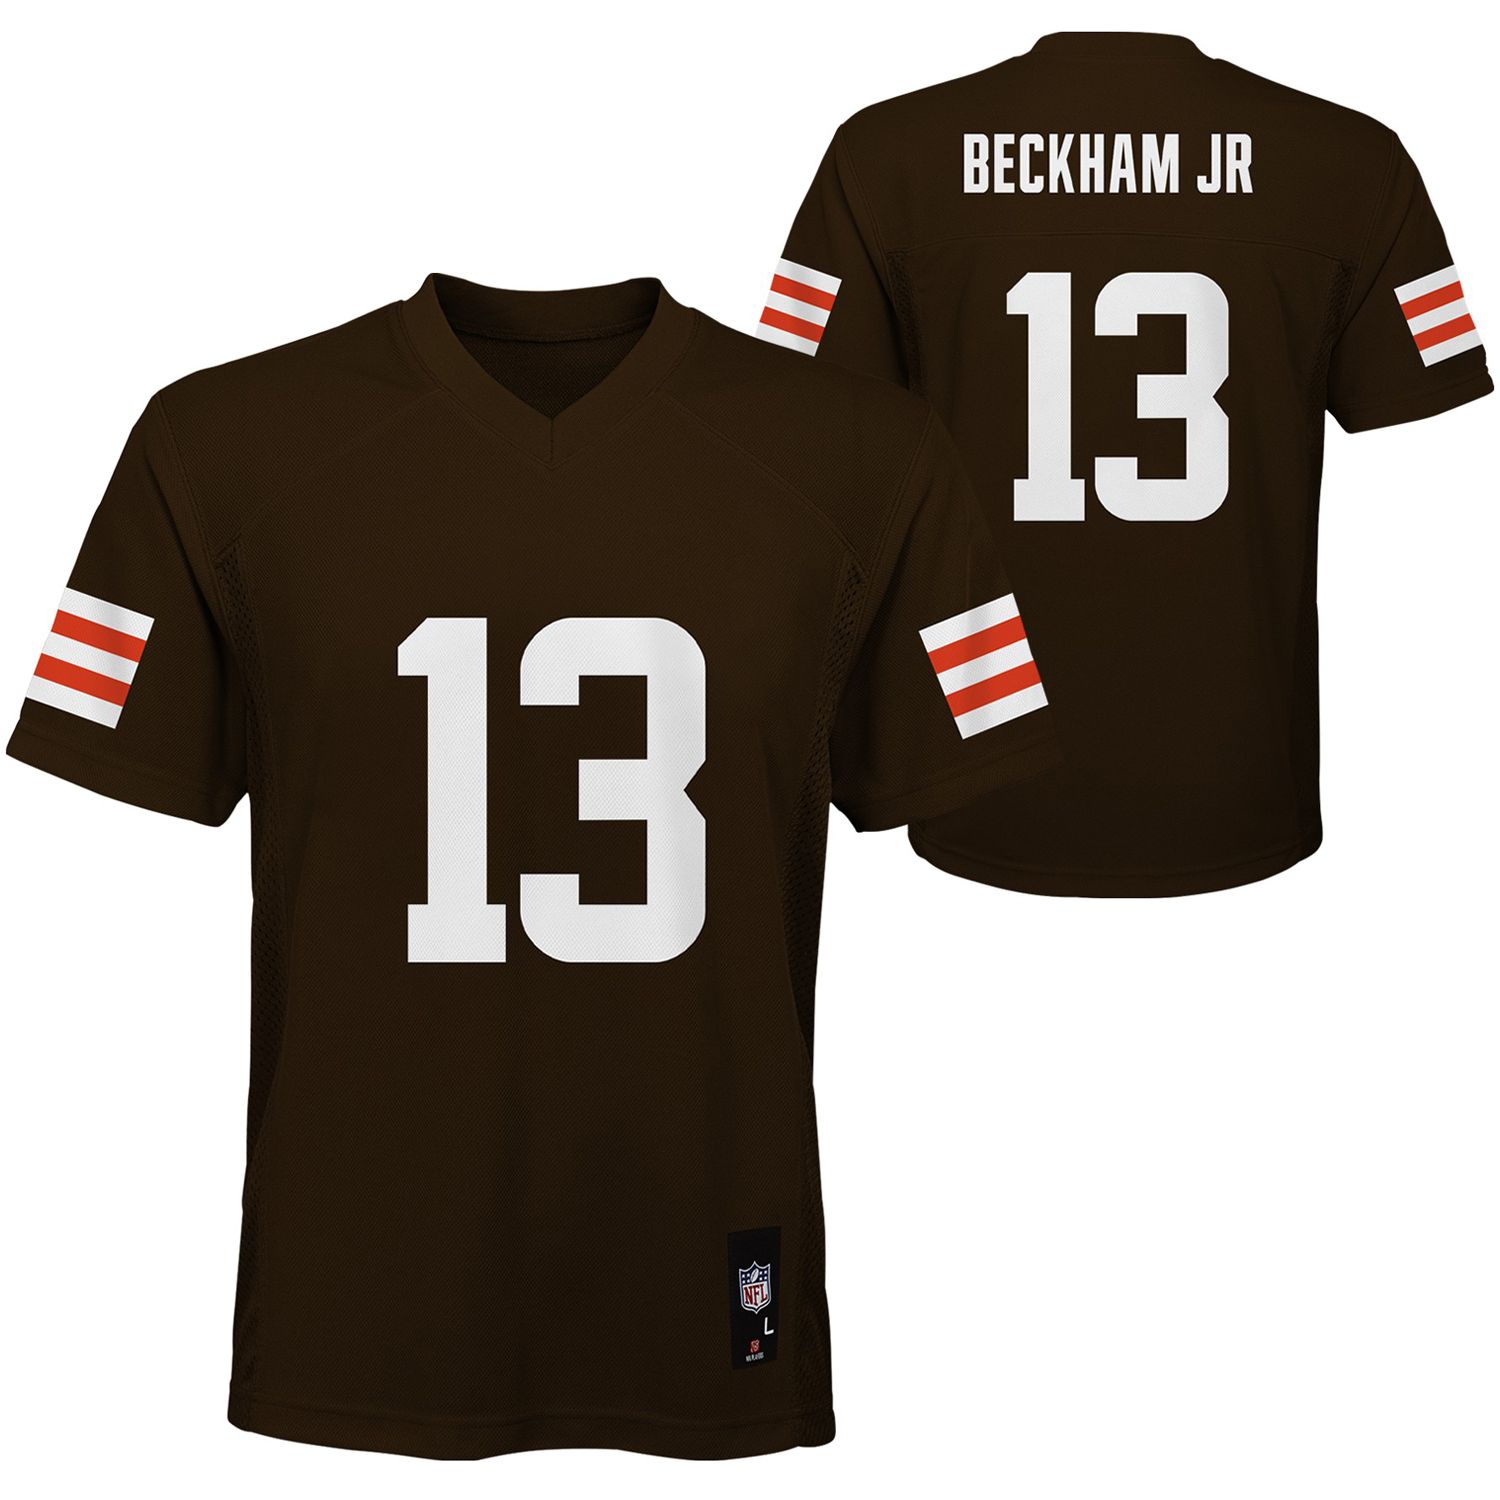 beckham browns jersey